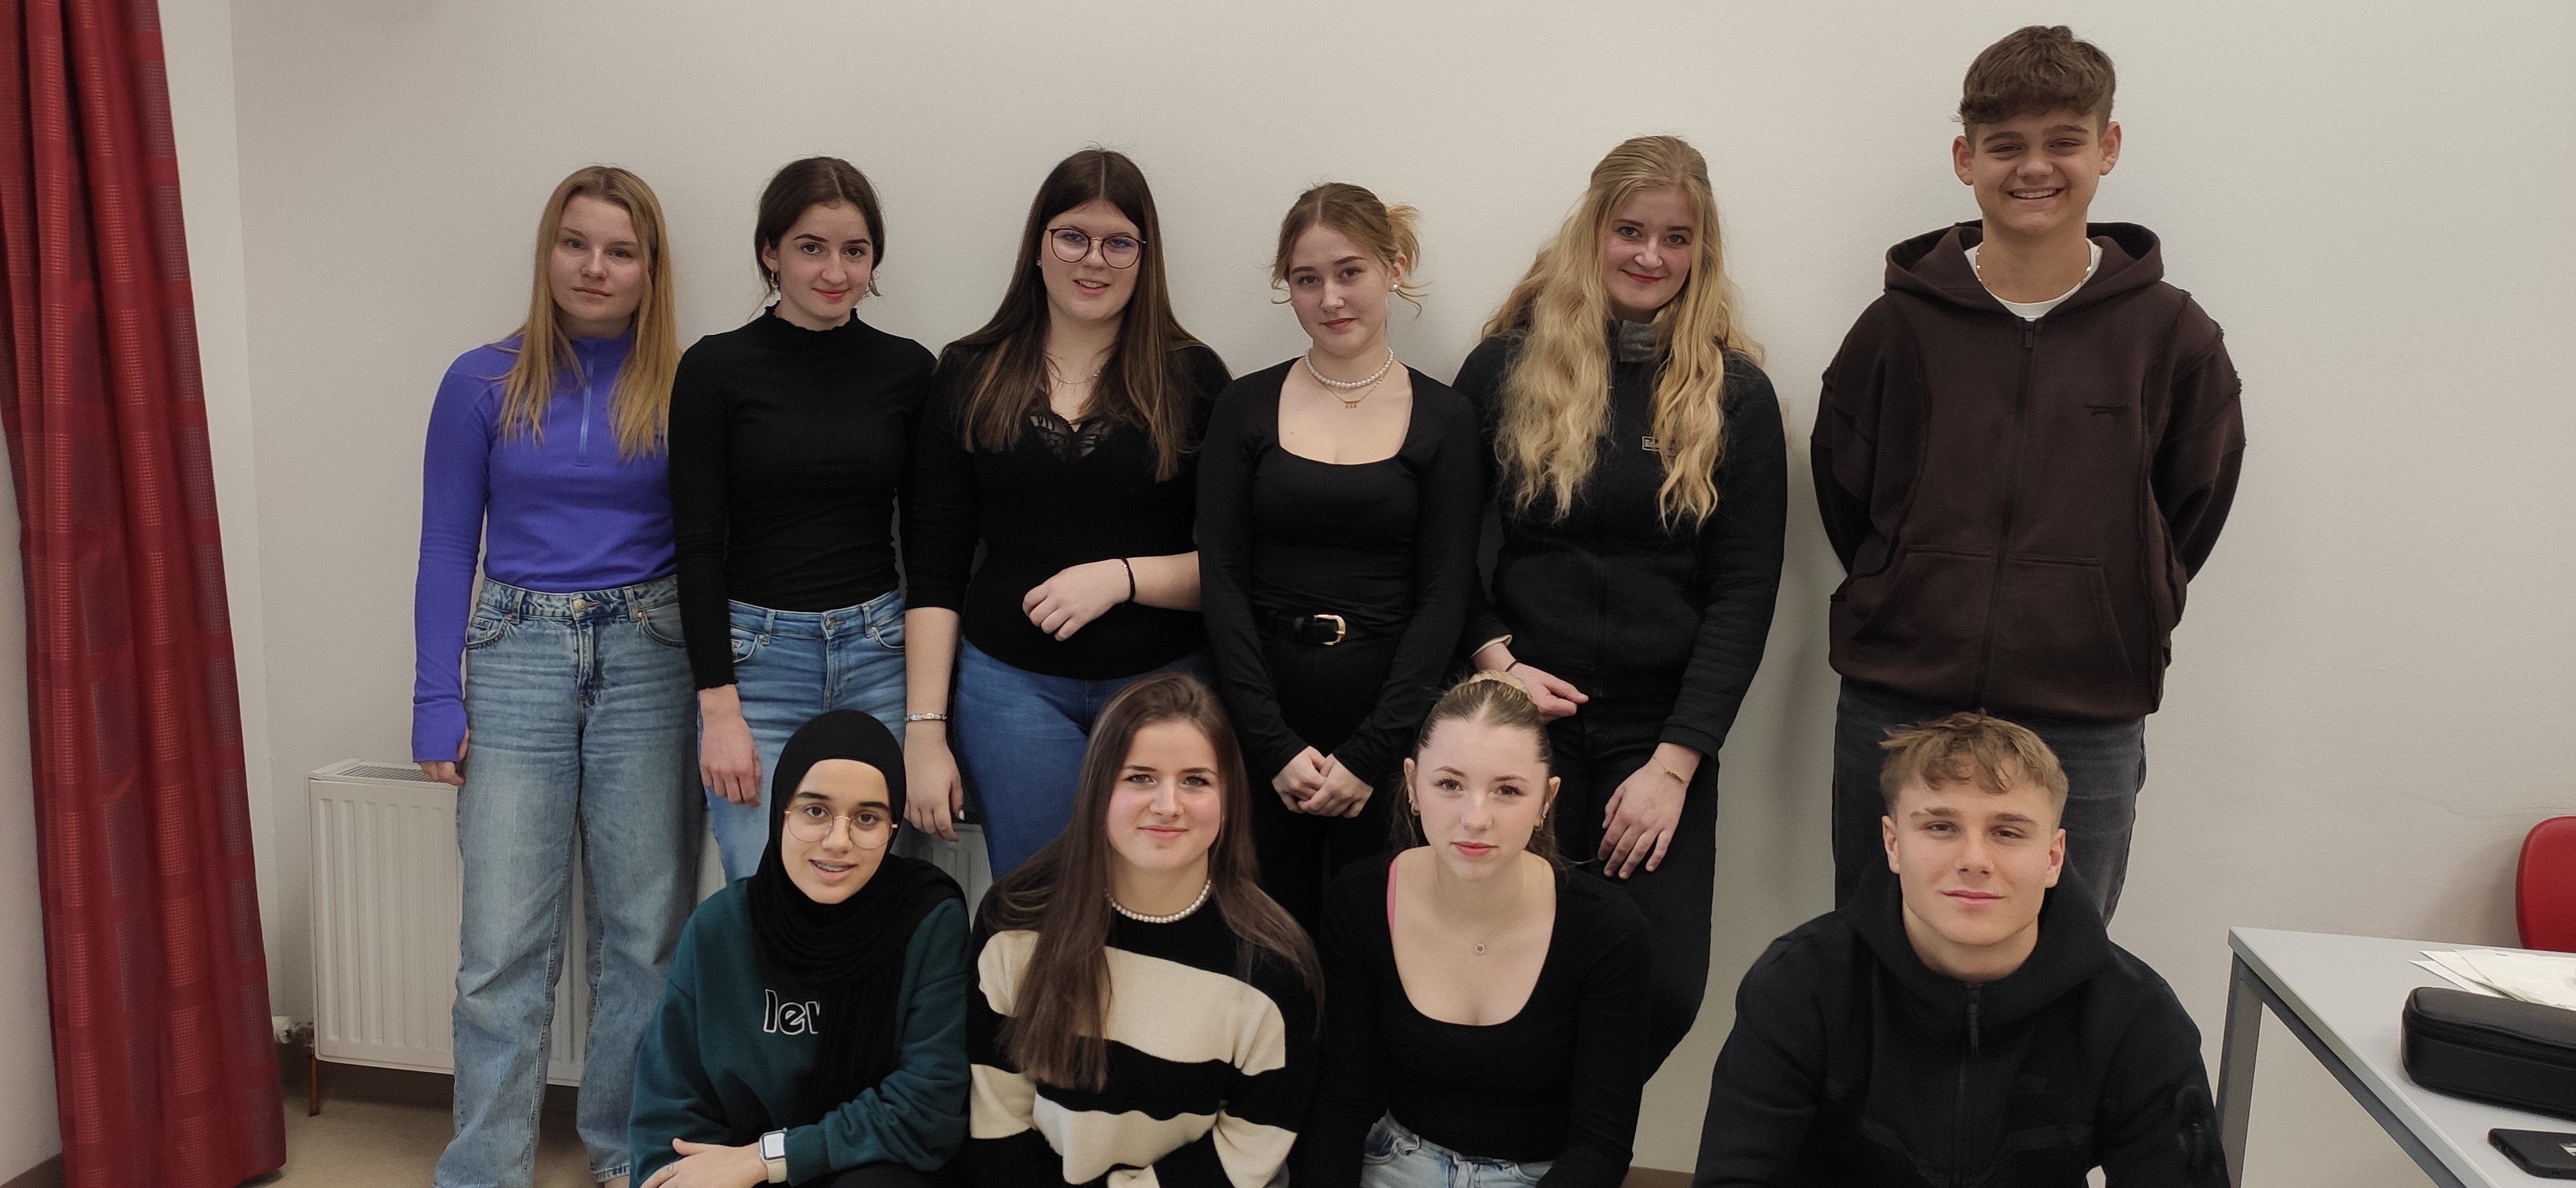 Gruppenfoto der Klasse 1F von der Tiroler Fachberufsschule für Handel und Büro